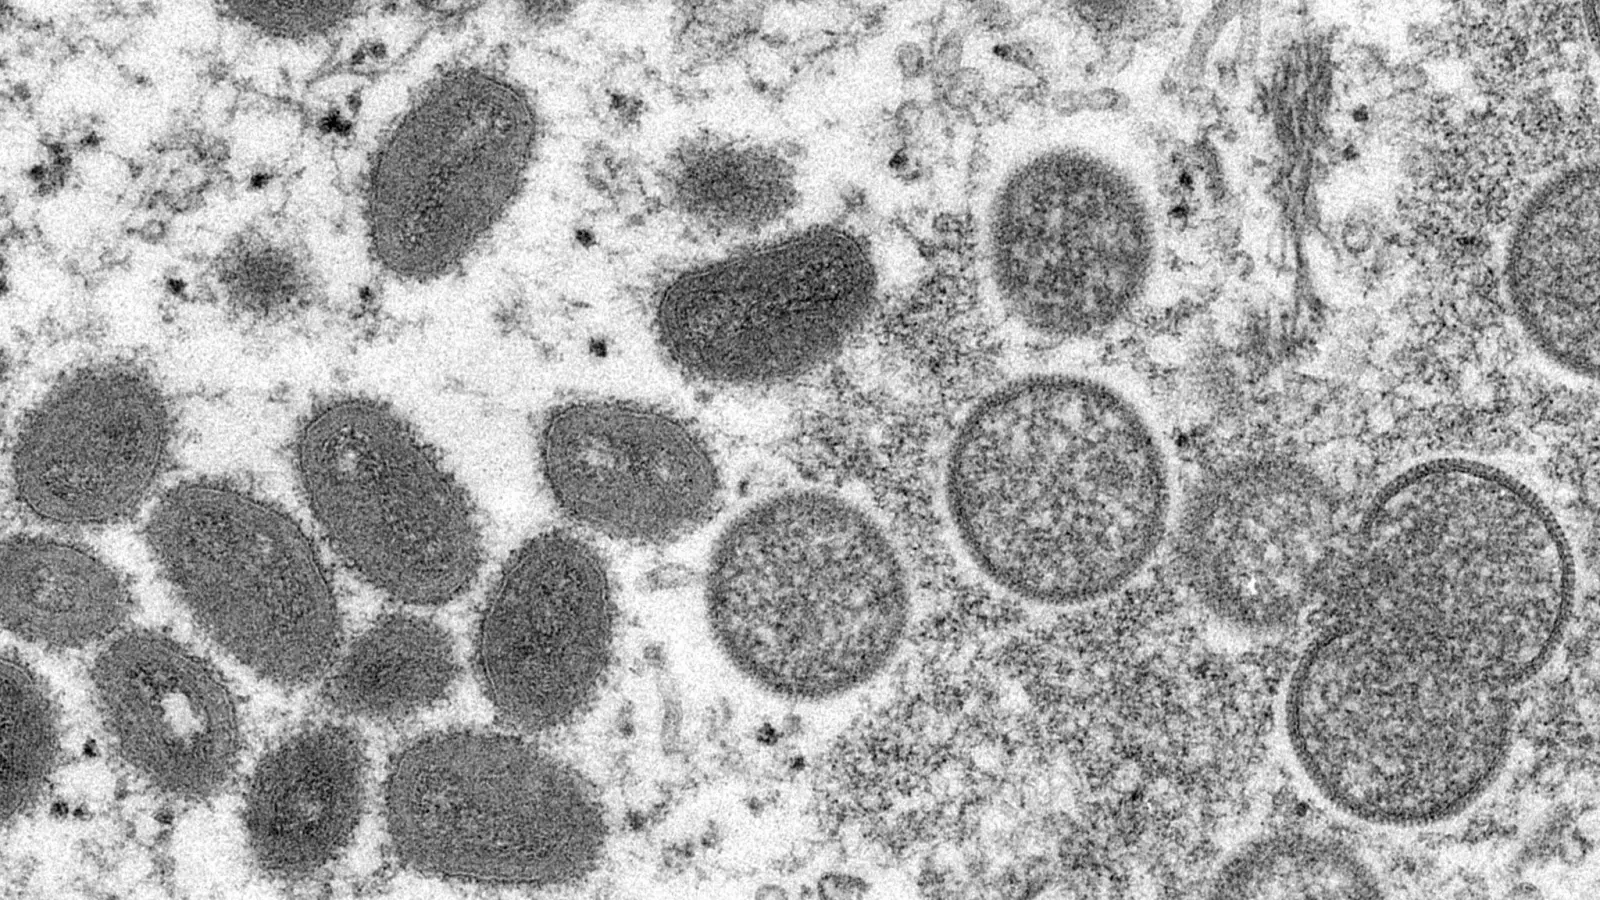 Reife, ovale Affenpockenviren (l) und kugelförmige unreife Virionen (r) aus einer menschlichen Hautprobe: Fälle der eigentlich seltenen Affenpocken werden mittlerweile in immer mehr Ländern nachgewiesen . (Foto: Cynthia S. Goldsmith/Russell Regner/CDC/AP/dpa)